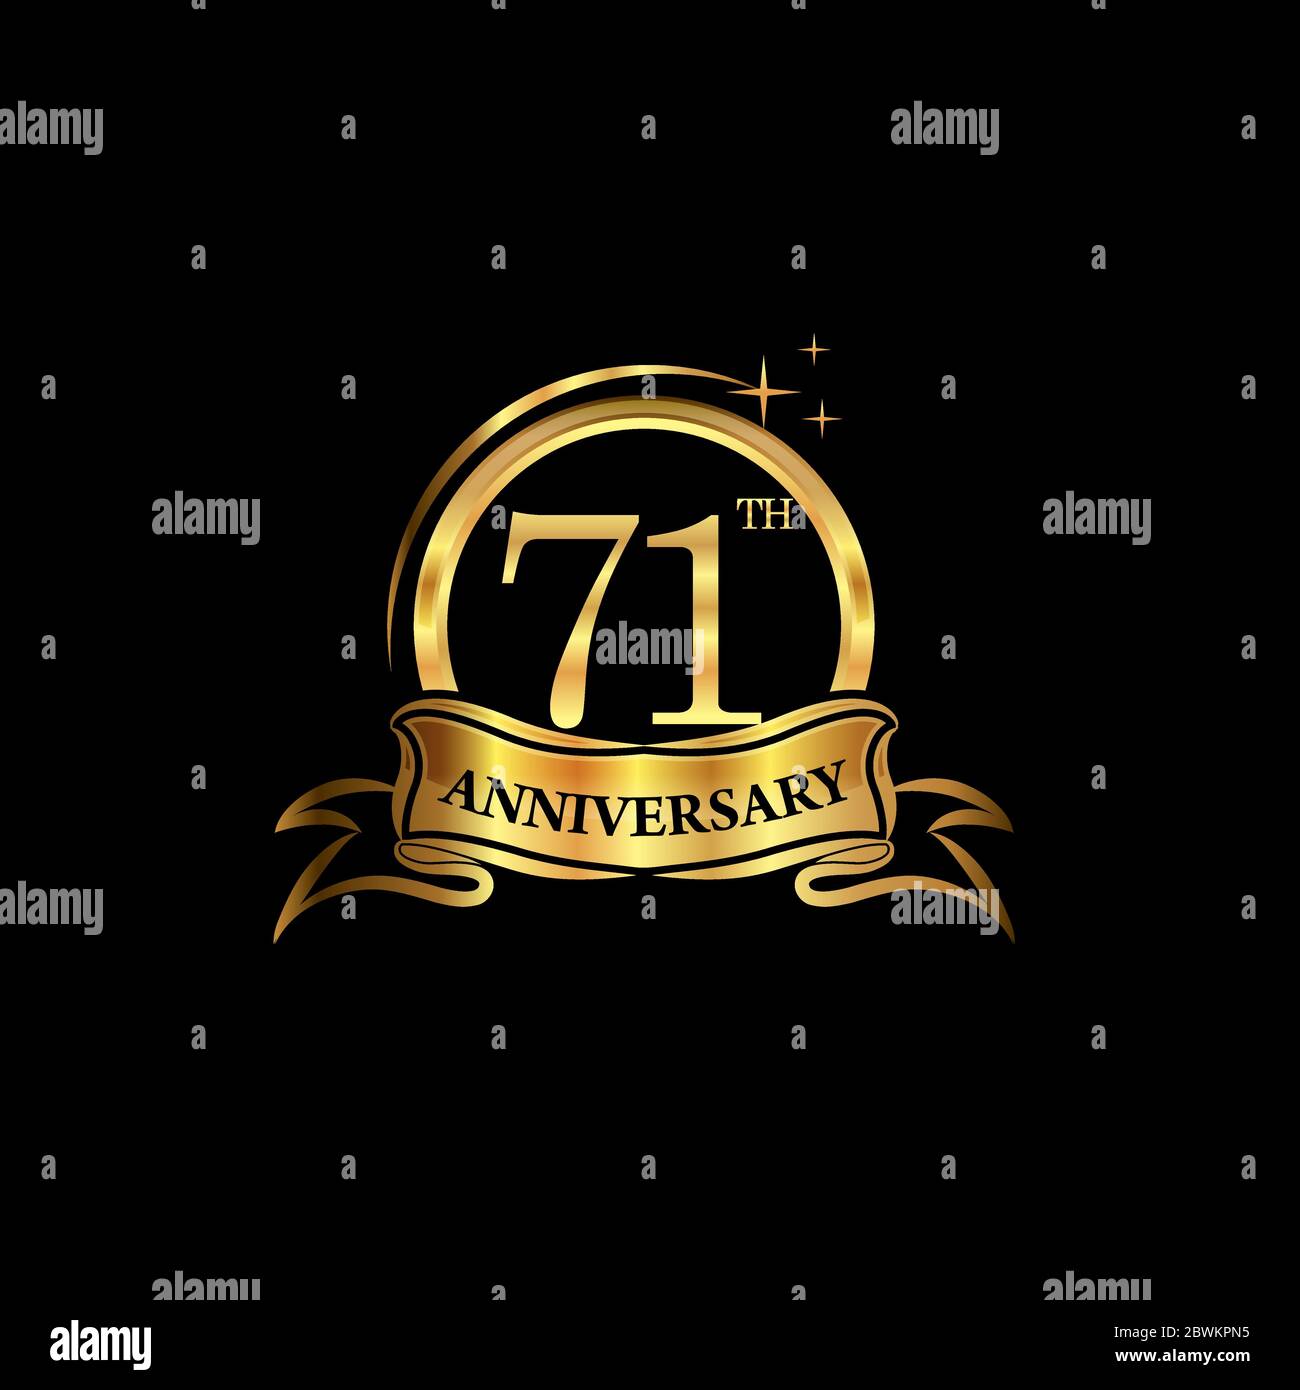 diseño del 71 aniversario logotipo de color dorado con anillo y cinta de oro para la celebración del aniversario. EPS10 Ilustración del Vector